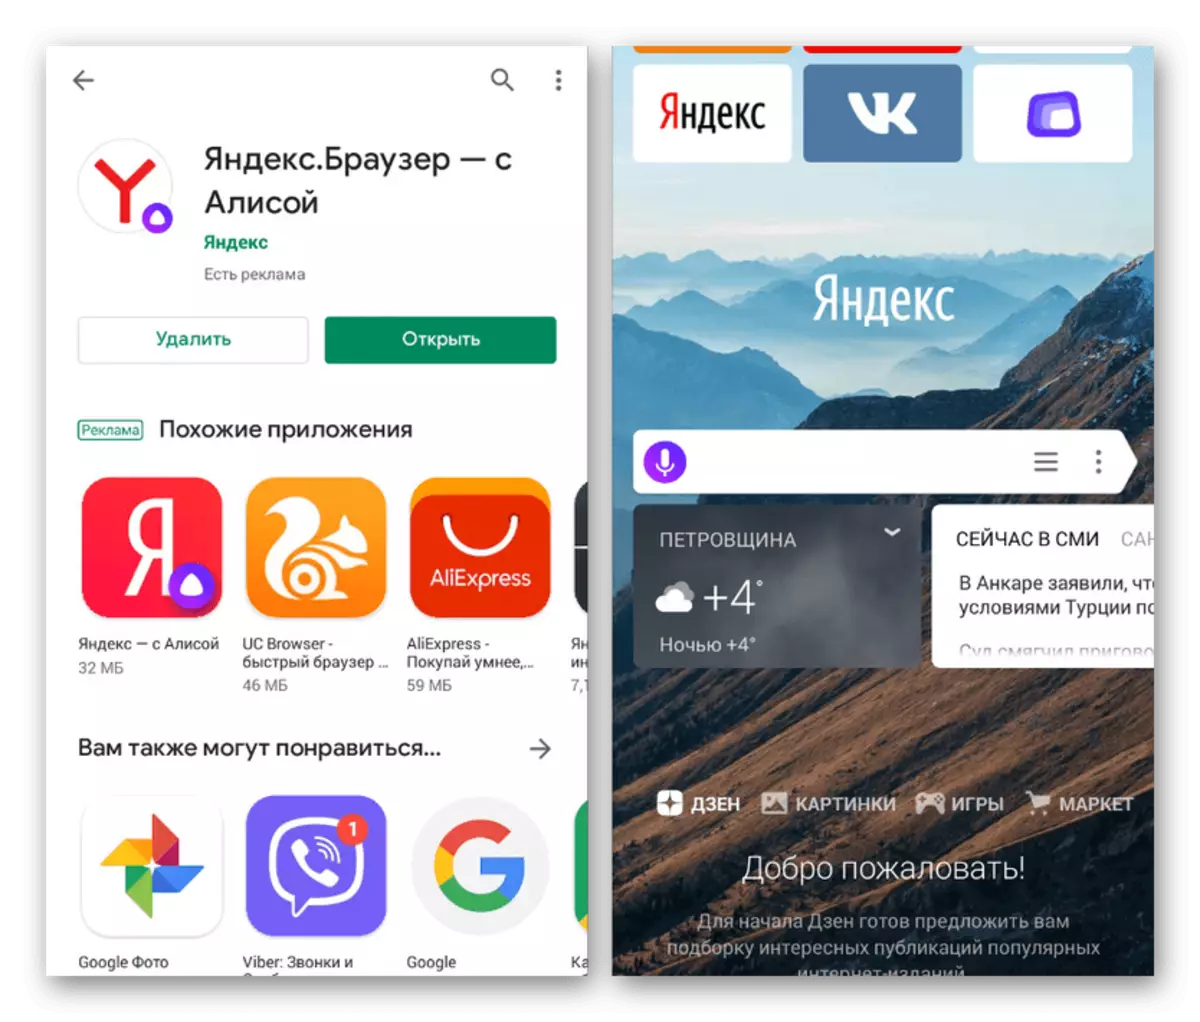 නියැදි Yandex ආරම්භක පිටුව yandx.browser